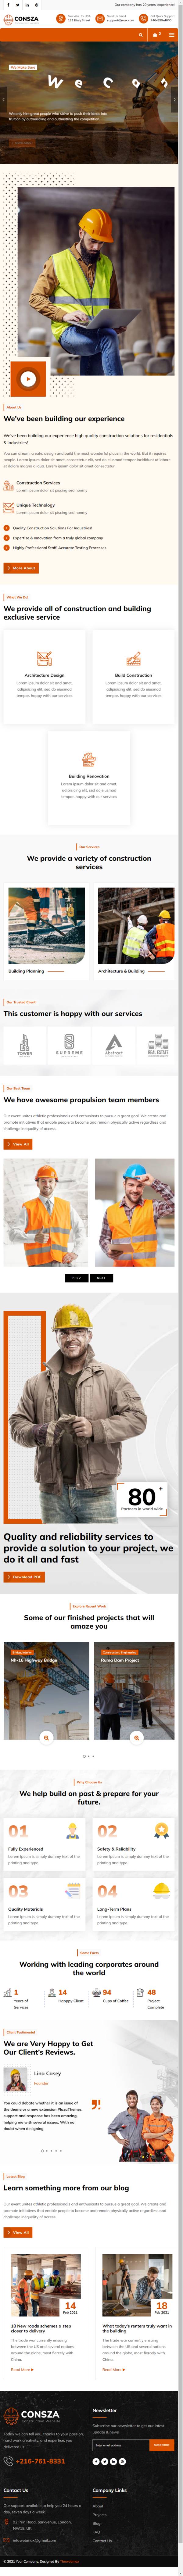 房地产建筑工程企业网站HTML5模板